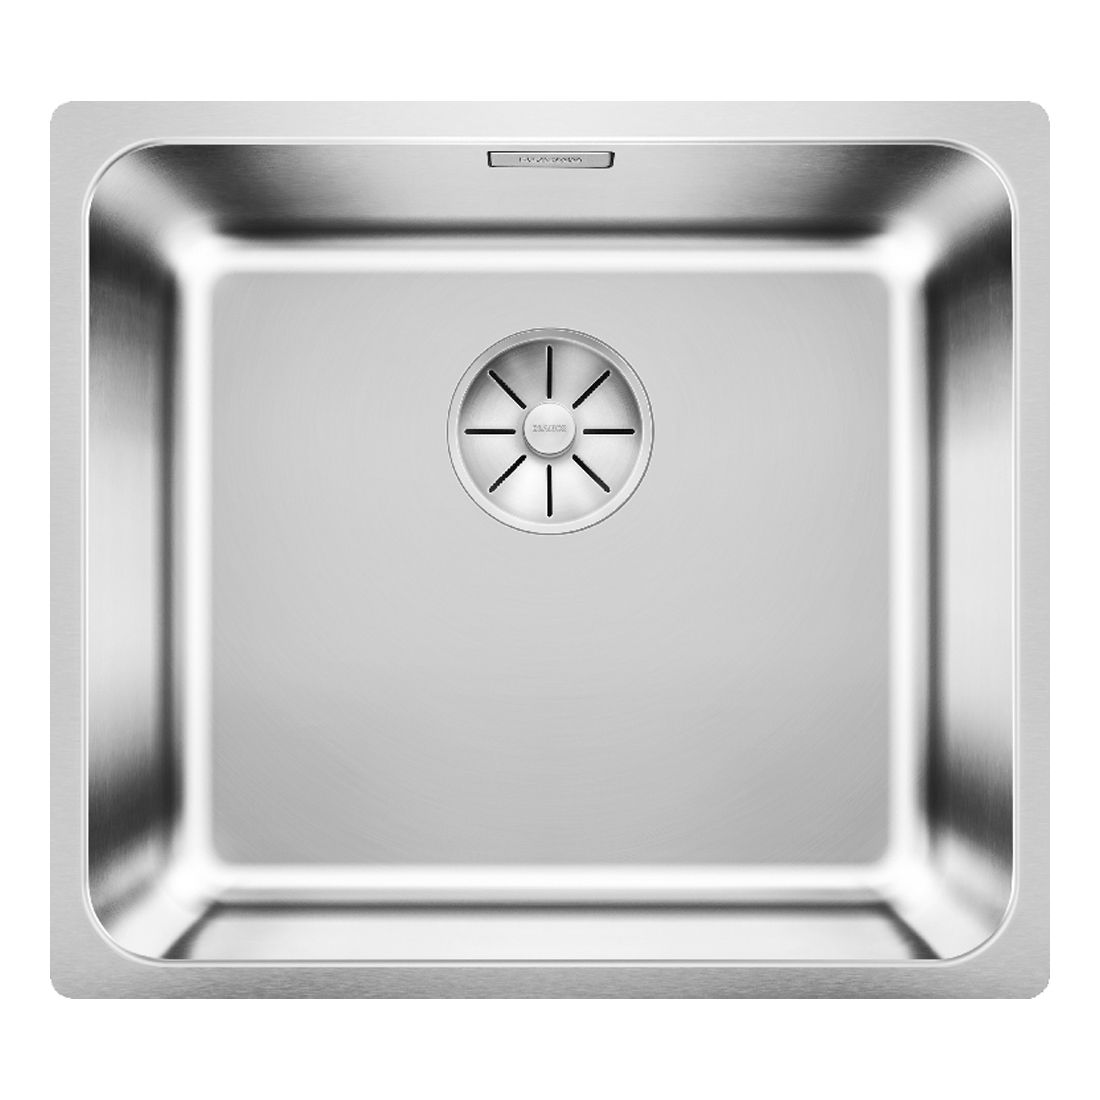 Кухонная мойка Blanco Solis 450-U полированная сталь кухонная мойка franke 122 0689 805 нержавеющая сталь